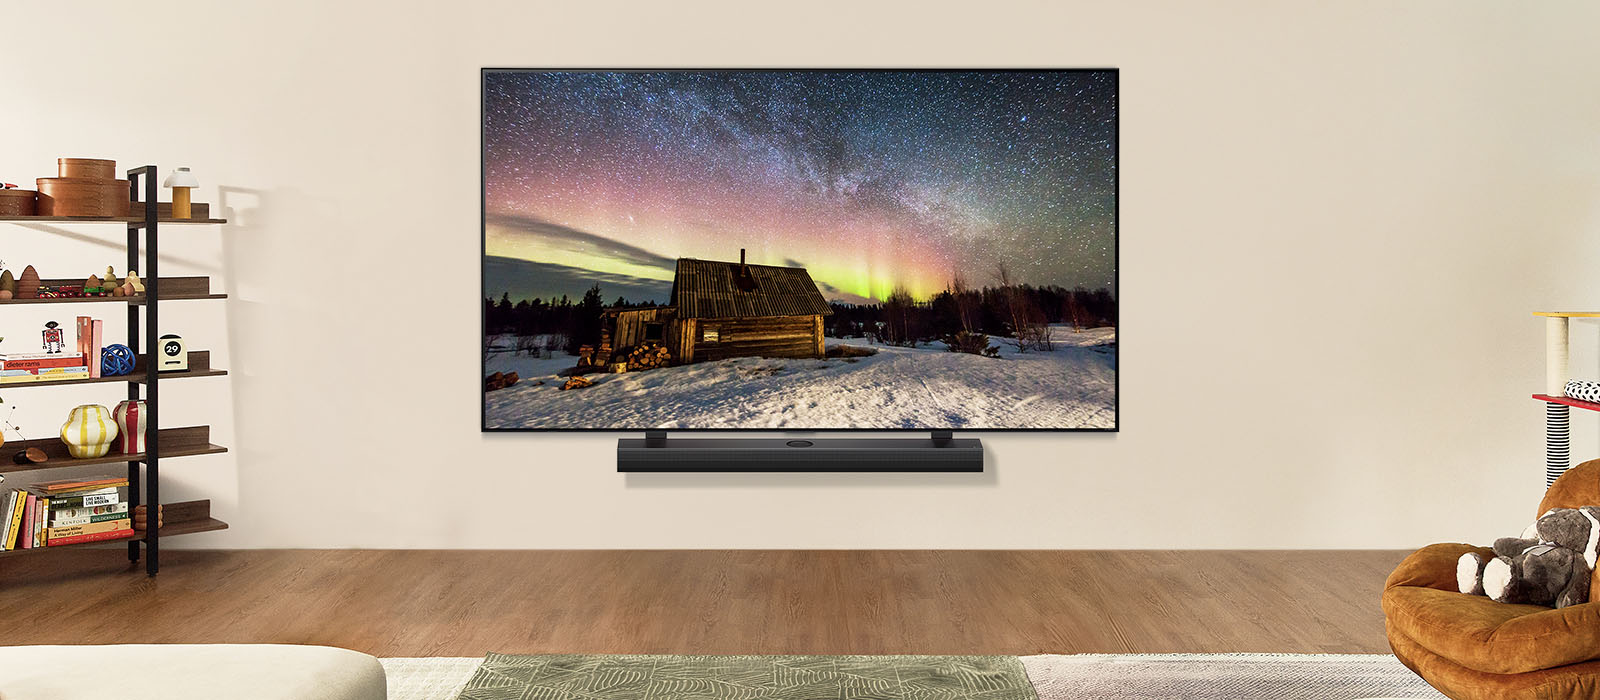 Μια LG TV και ένα LG Soundbar σε ένα σύγχρονο σαλόνι την ημέρα. Εμφανίζεται μια εικόνα της οθόνης του Βόρειου Σέλας με τα ιδανικά επίπεδα φωτεινότητας.